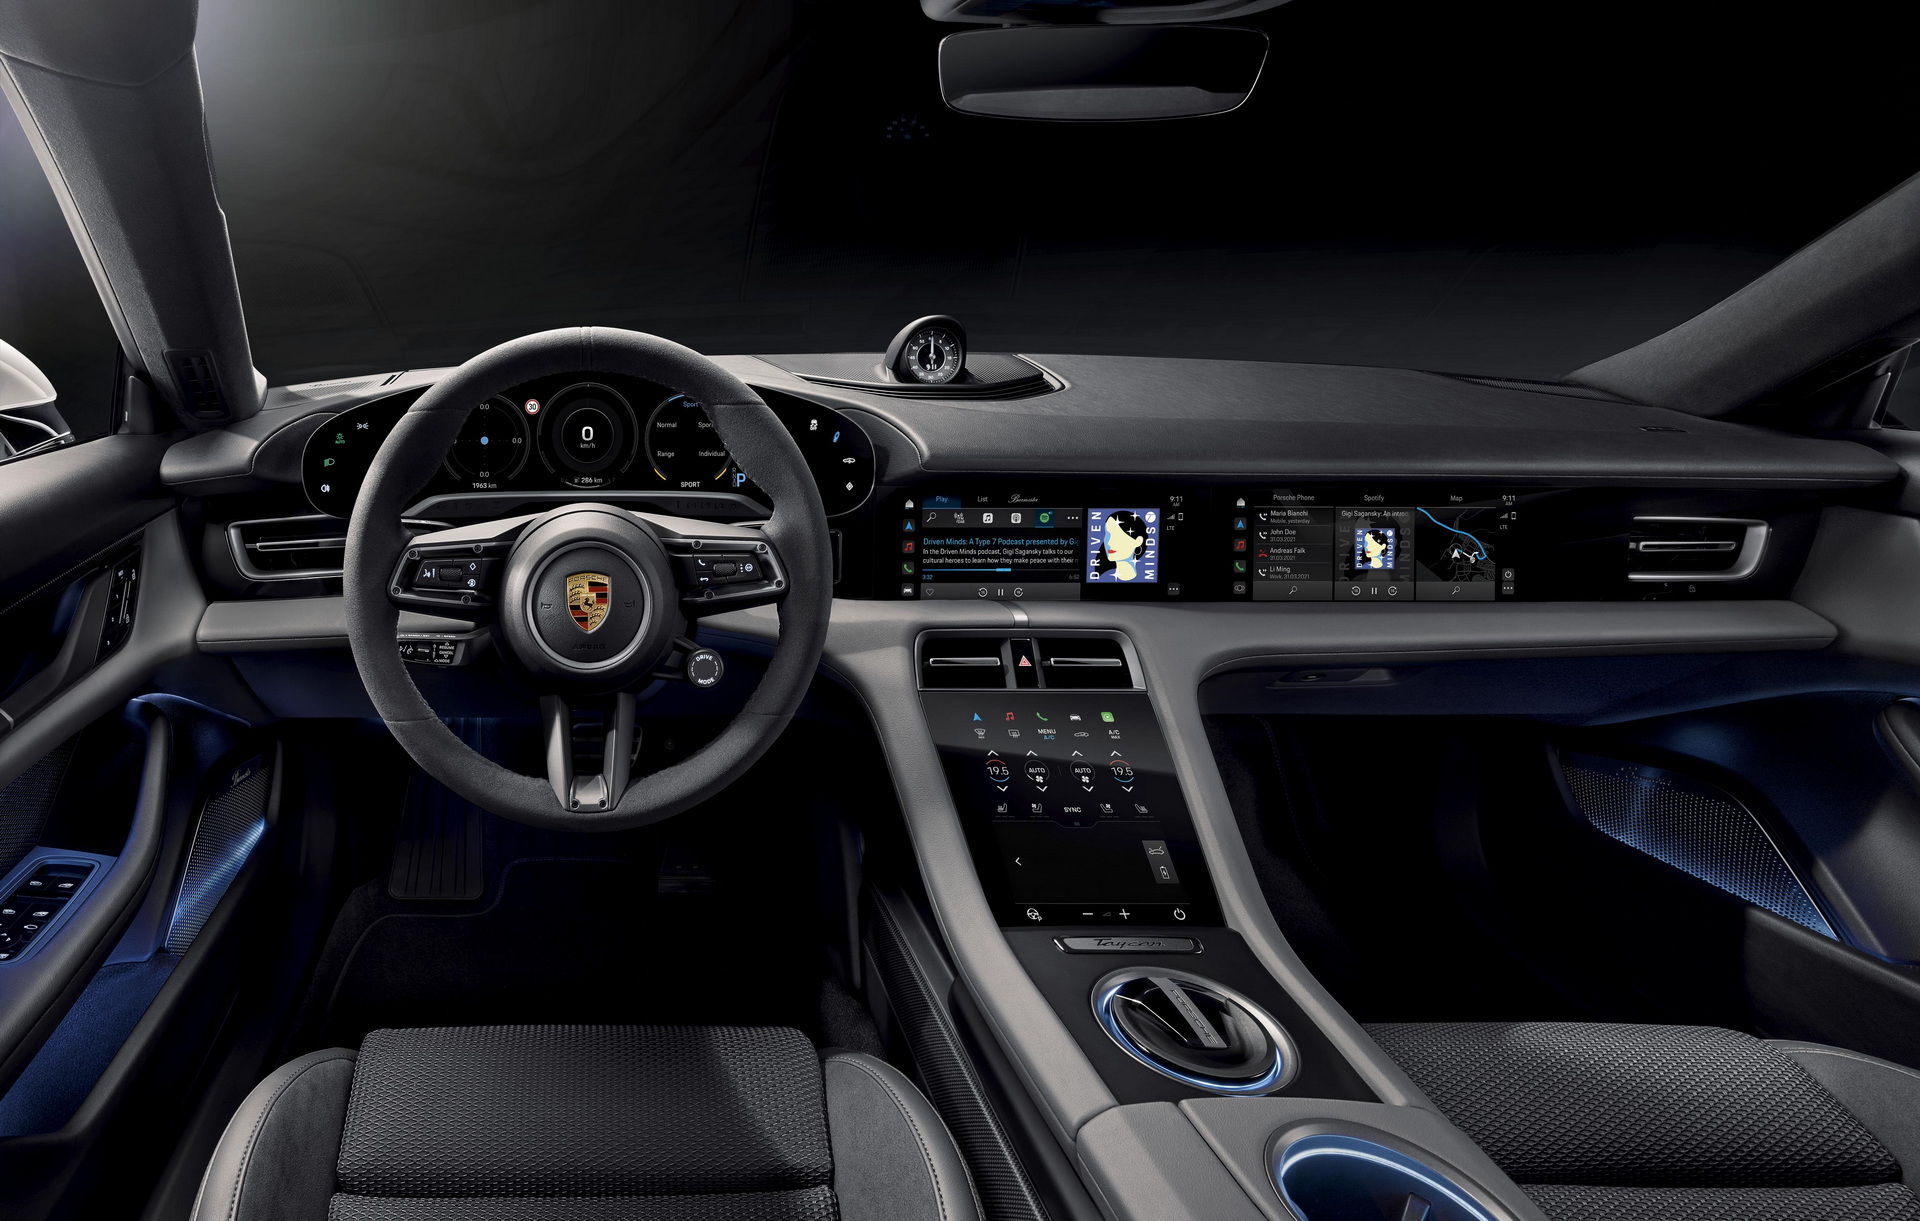 Màn hình xe Porsche - Tận hưởng hành trình cực kỳ tiện lợi với màn hình xe Porsche. Hình ảnh sắc nét và tính năng thông minh trên màn hình này sẽ khiến bạn không muốn rời khỏi chiếc xe.